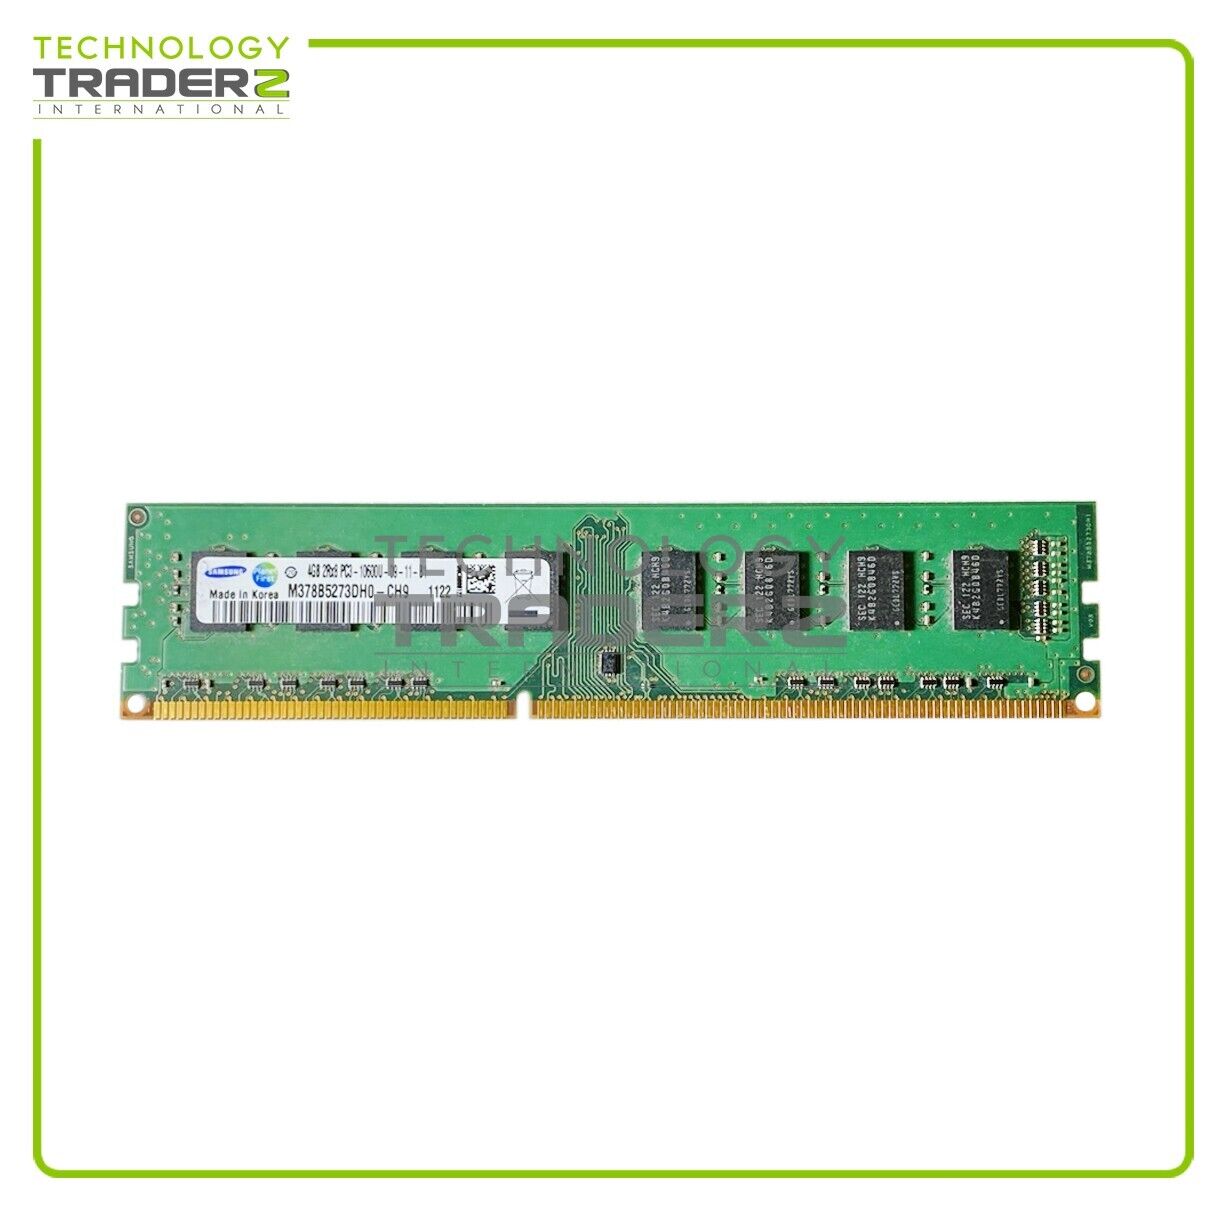 M378B5273DH0-CH9 Samsung 4GB PC3-10600 DDR3-1333MHz Non-ECC Dual Rank Memory